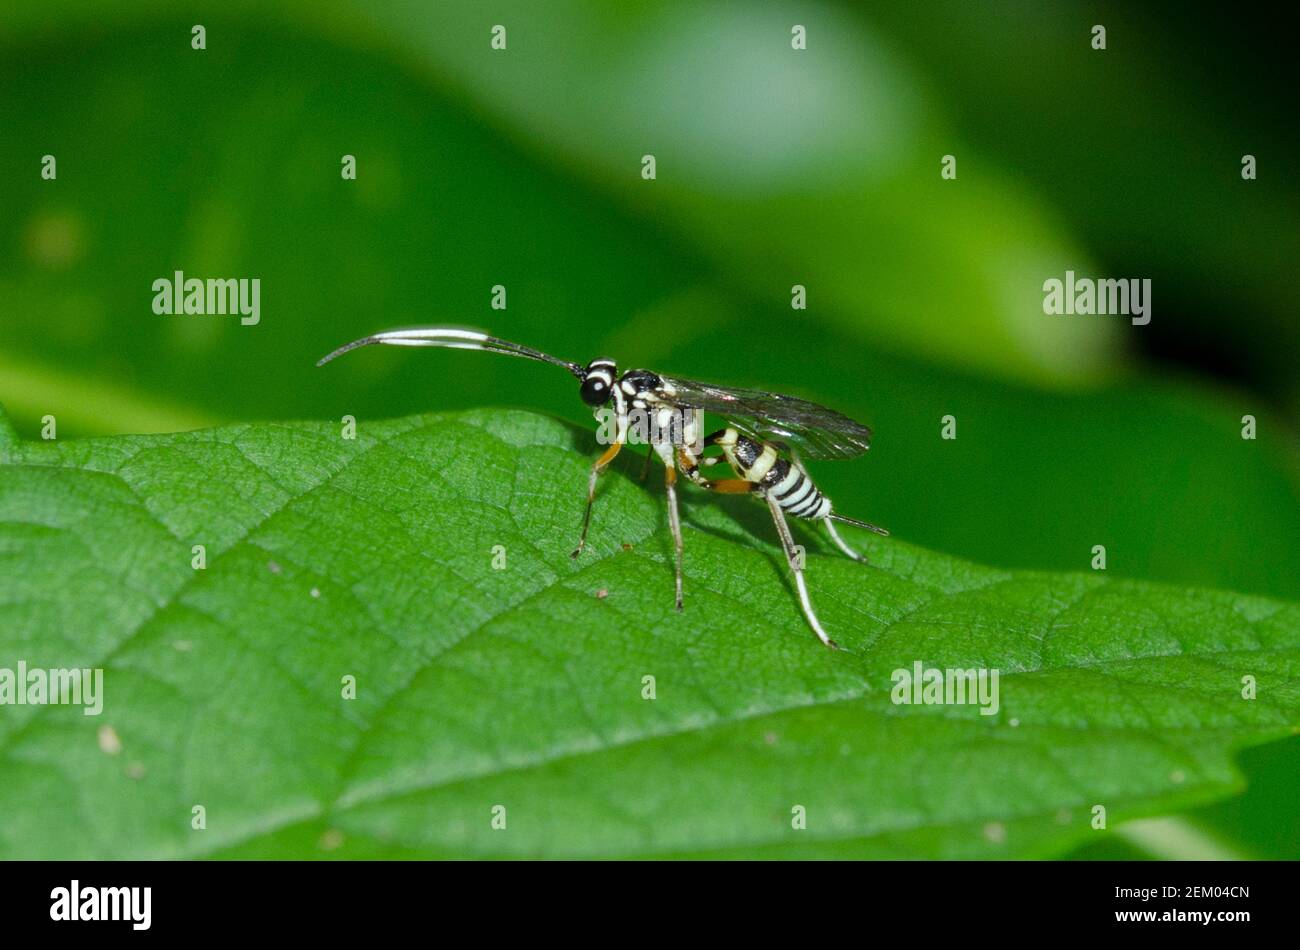 Ichneumon Wasp, Ichneumon promissorius, with ovipositor on leaf, Klungkung, Bali, Indonesia Stock Photo